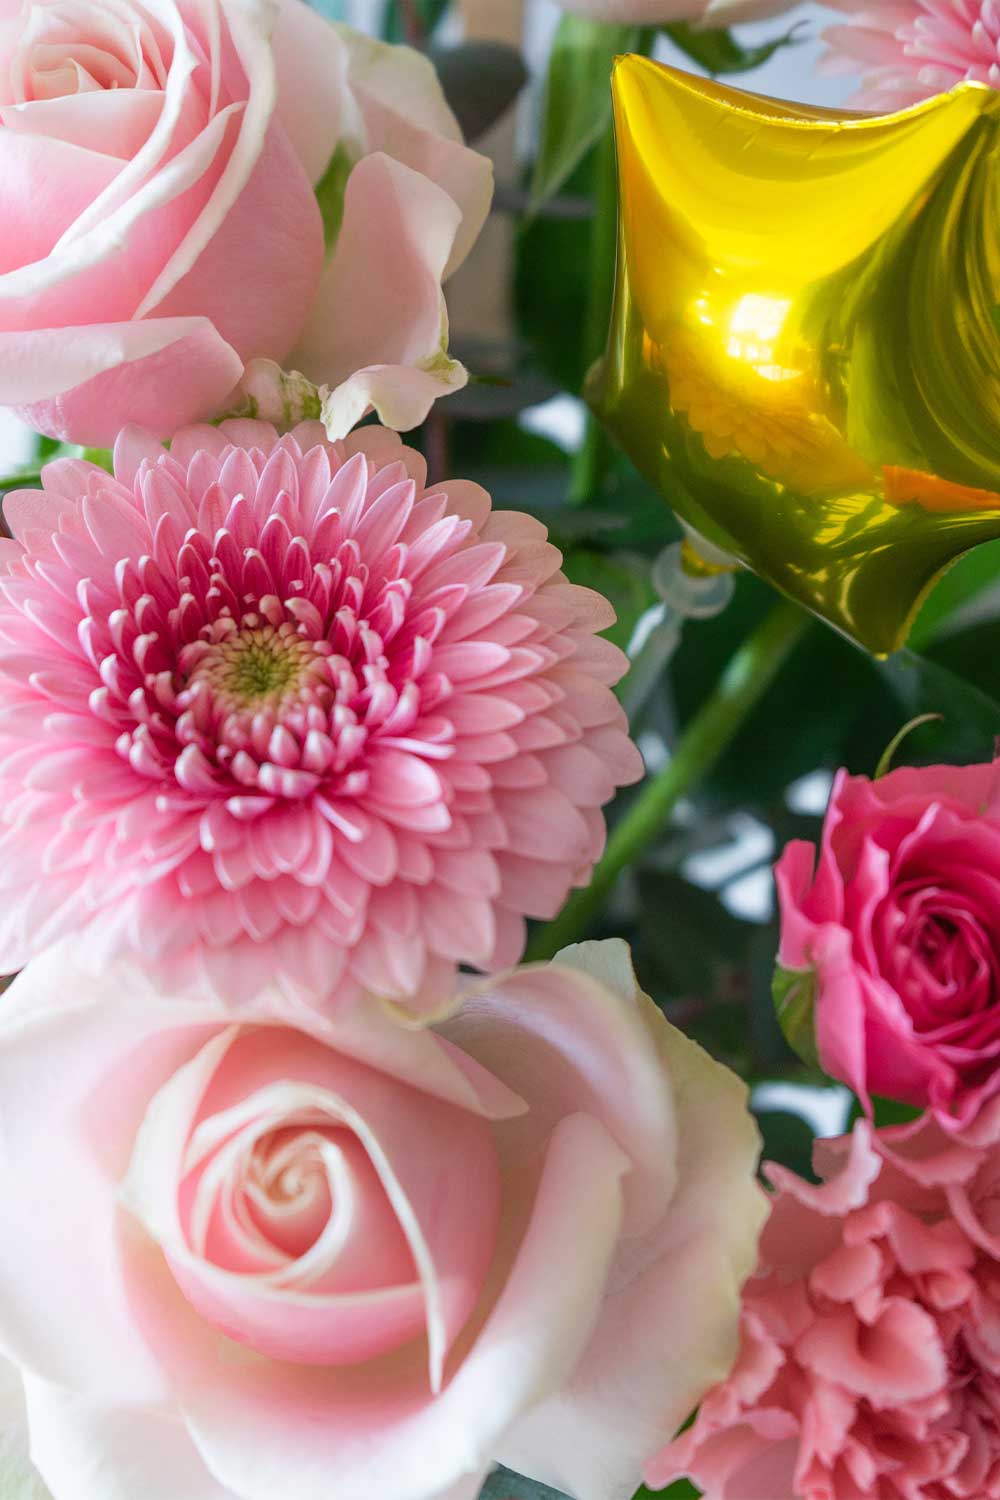 永年勤続祝い 永年勤続祝いに贈る花 花通販ギフト配達 お花の窓口 法人に対応